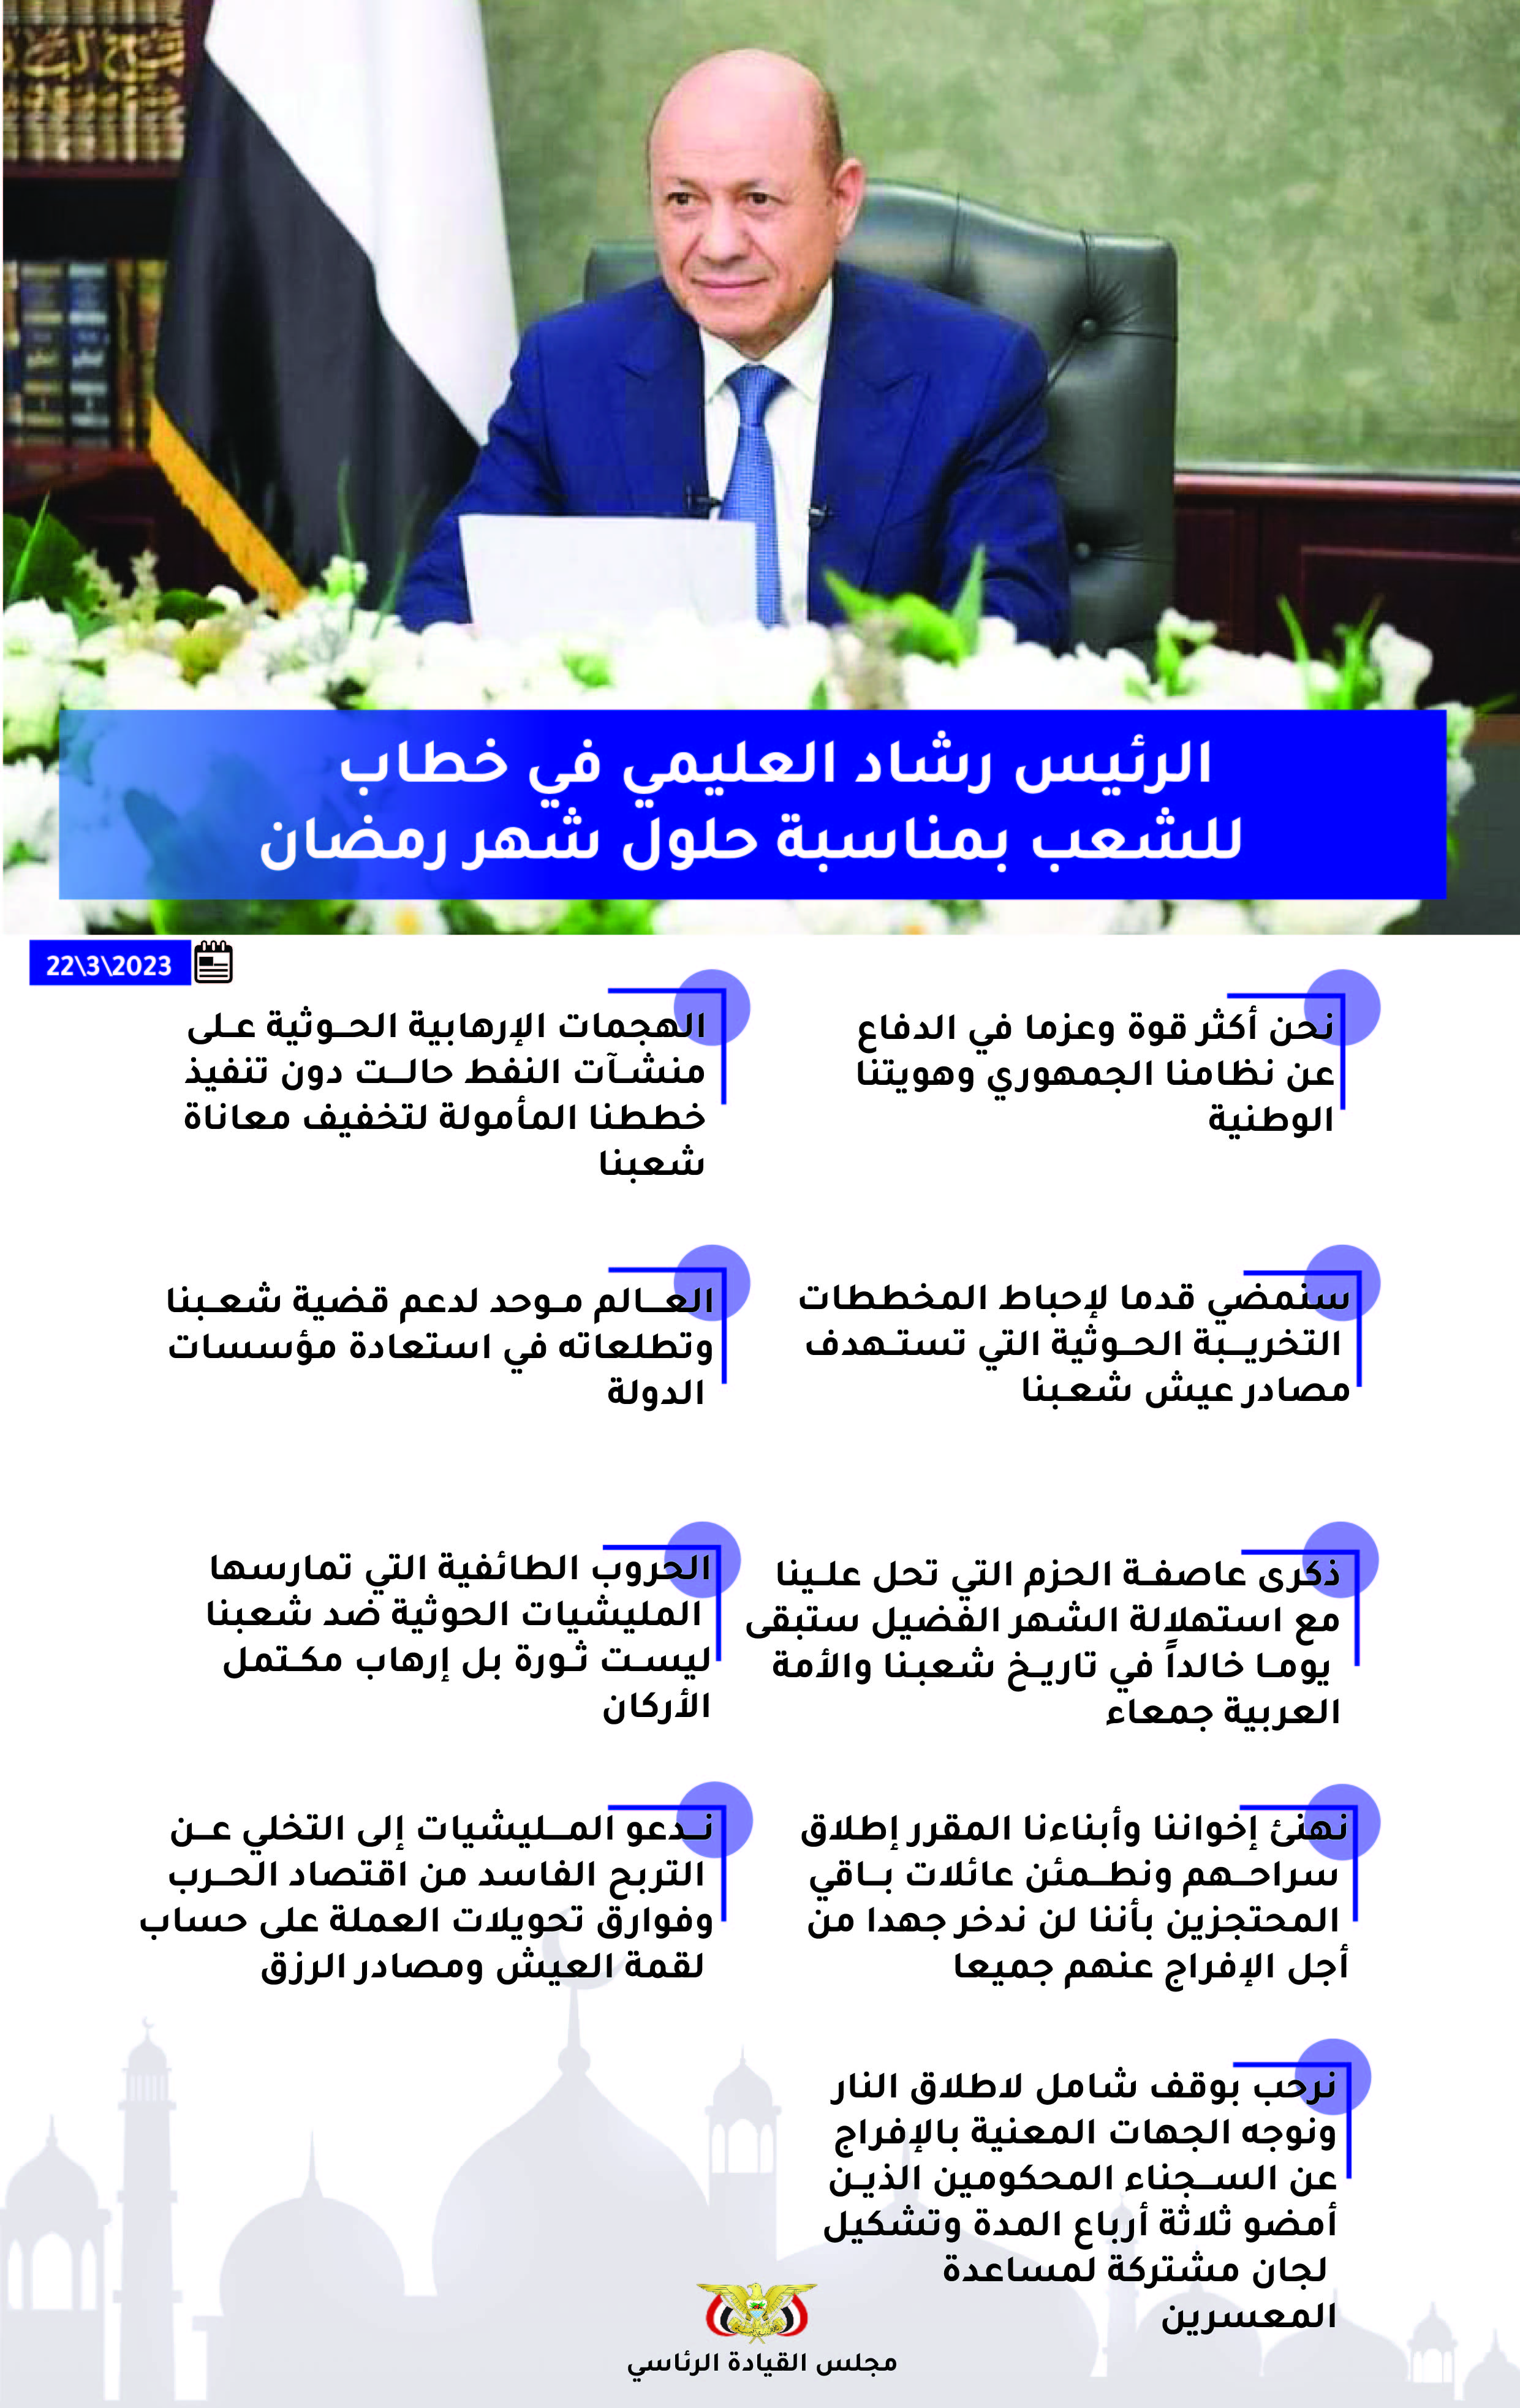  أبرز ما ورد في خطاب فخامة الرئيس الدكتور رشاد العليمي بمناسبة شهر رمضان المبارك